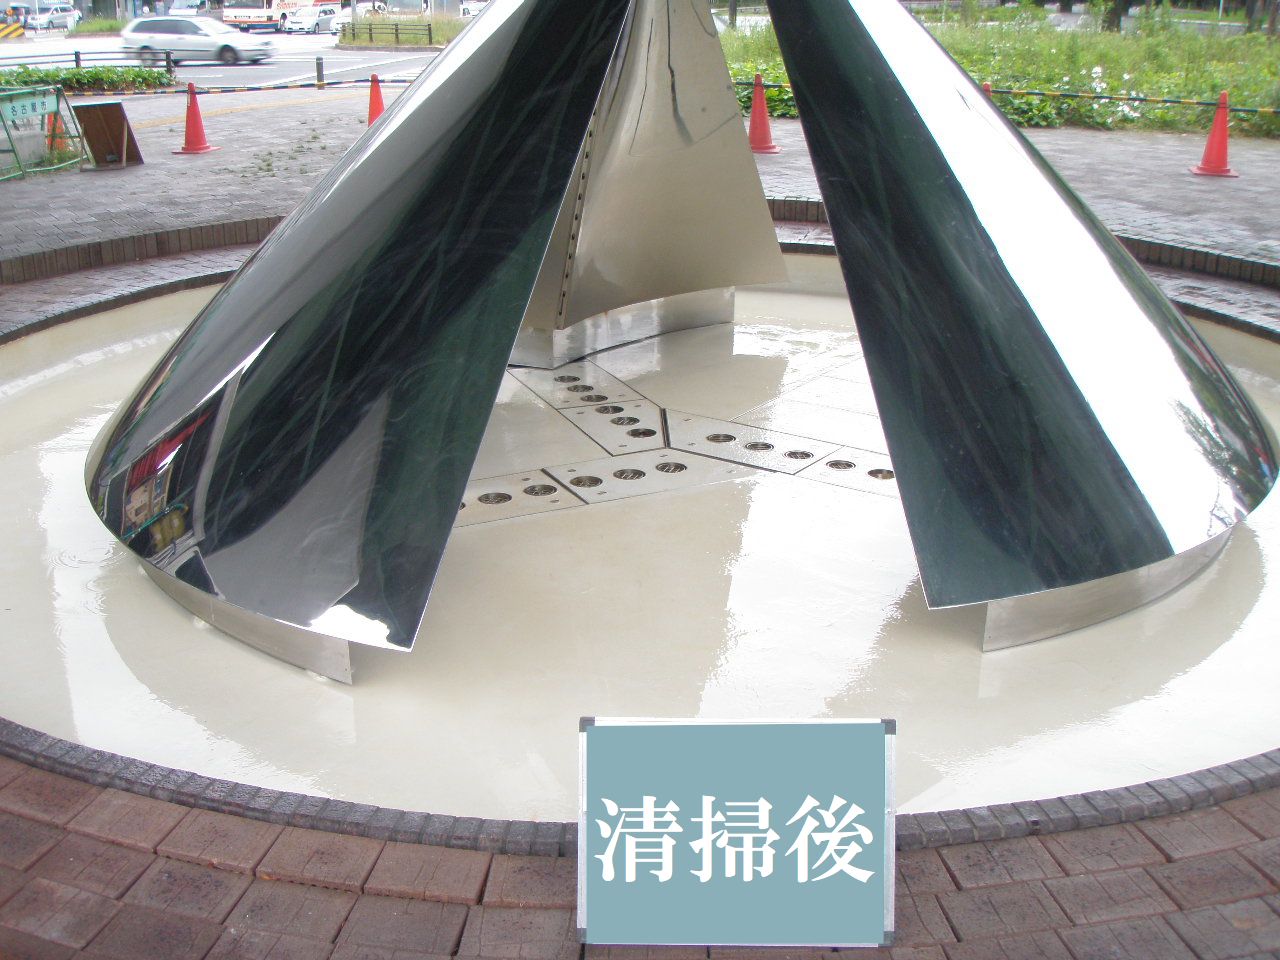 名古屋 噴水清掃